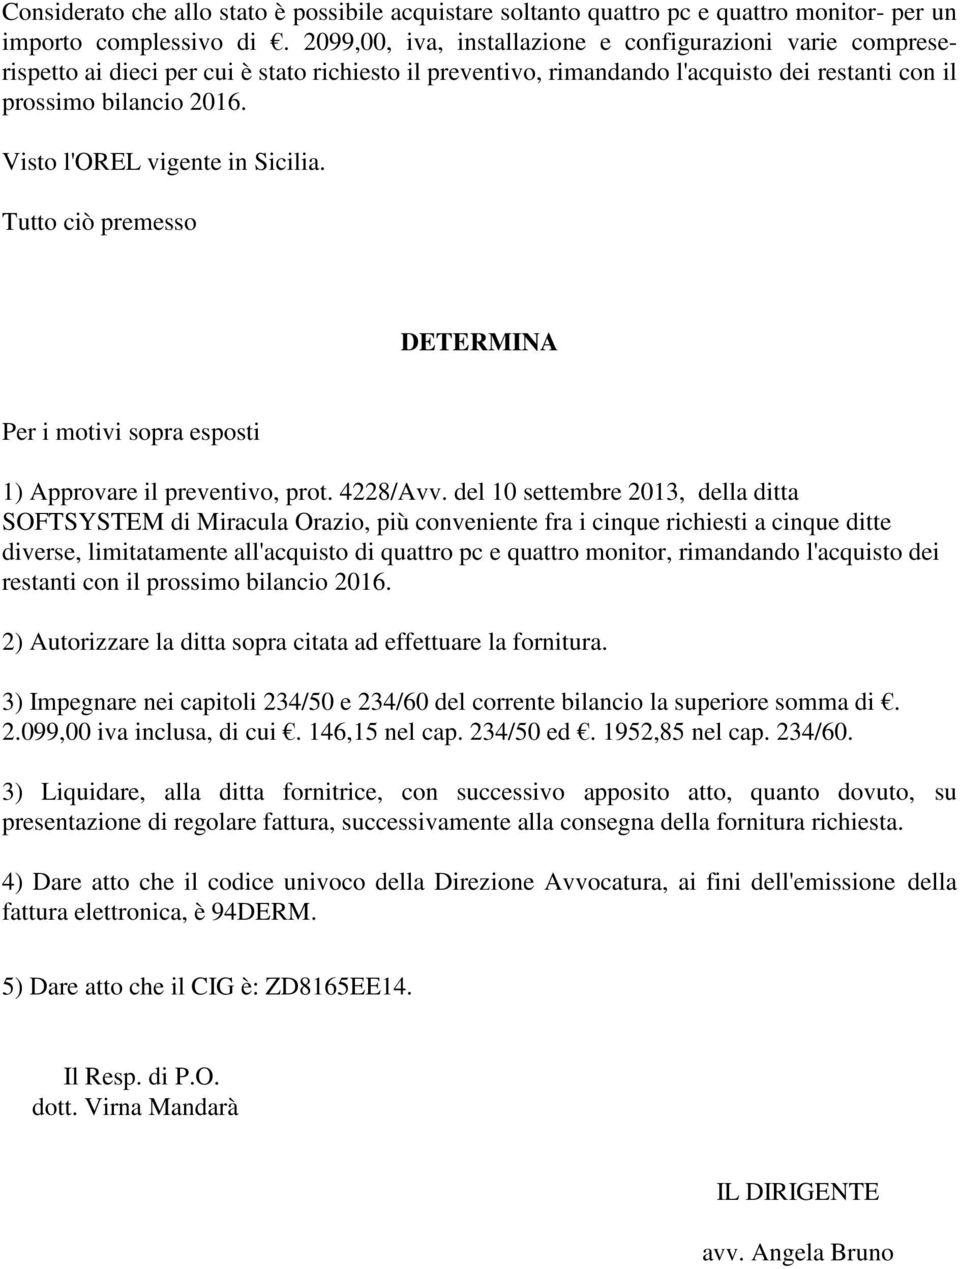 Visto l'orel vigente in Sicilia. Tutto ciò premesso DETERMINA Per i motivi sopra esposti 1) Approvare il preventivo, prot. 4228/Avv.